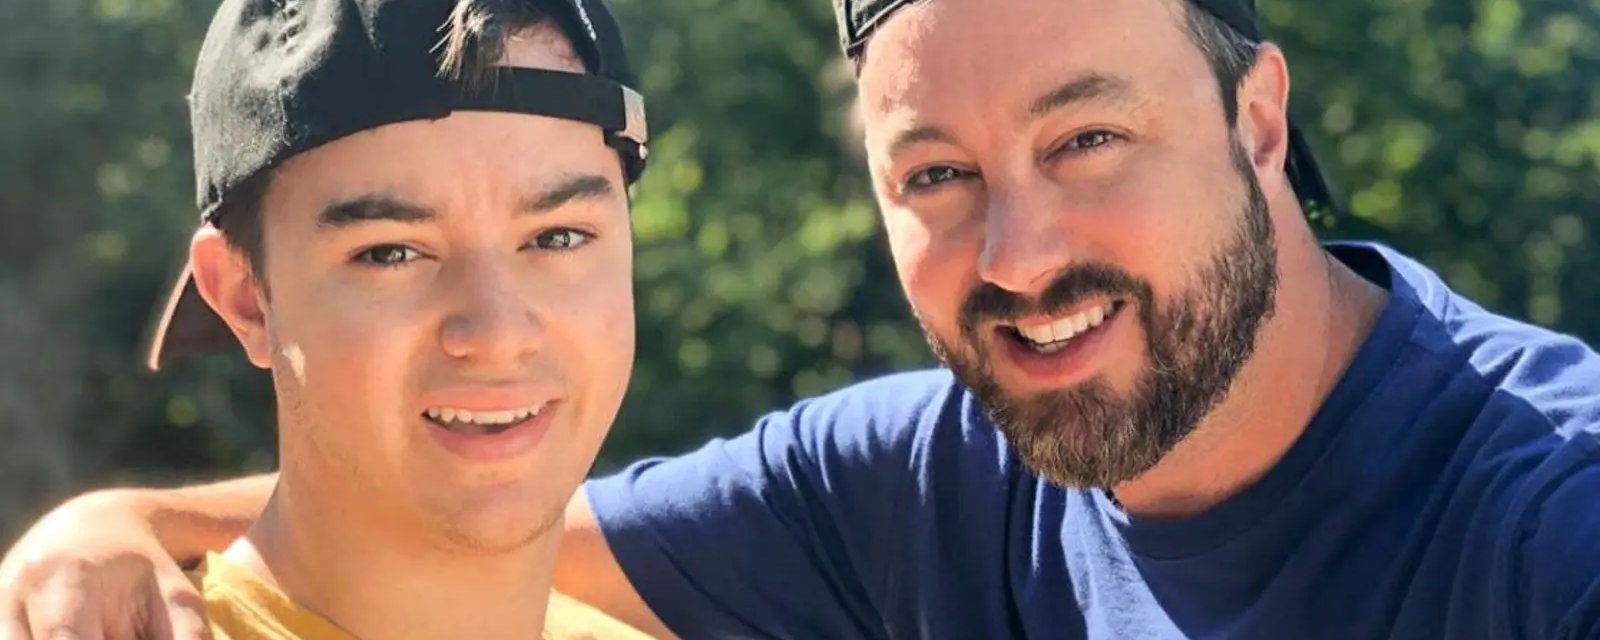 Benjamin Gratton publie une adorable photo avec son père Mathieu Gratton